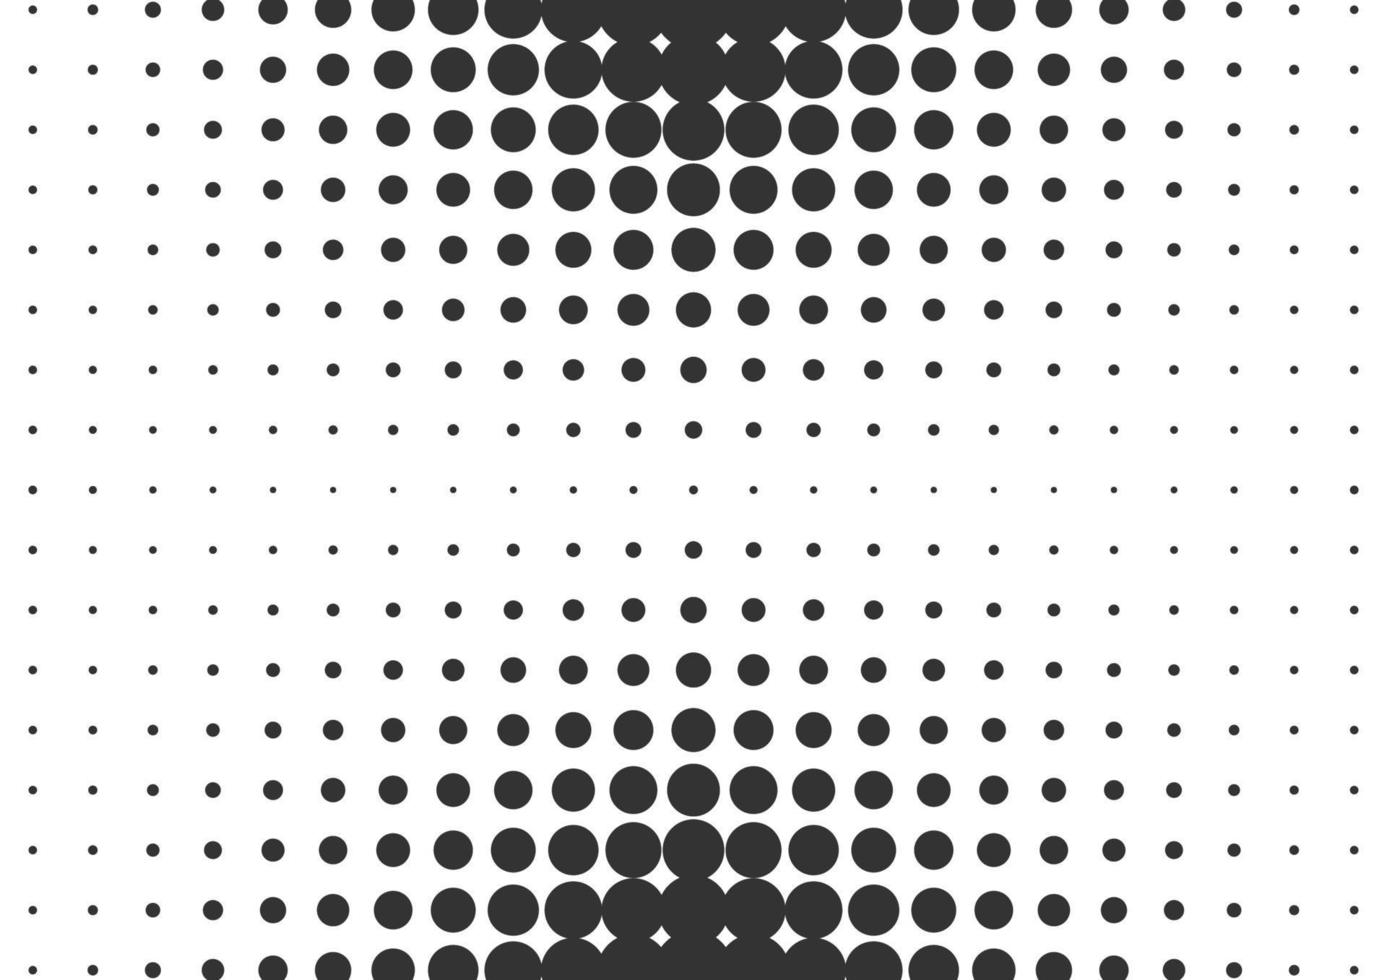 fondo de semitono de puntos blancos y negros abstractos vector